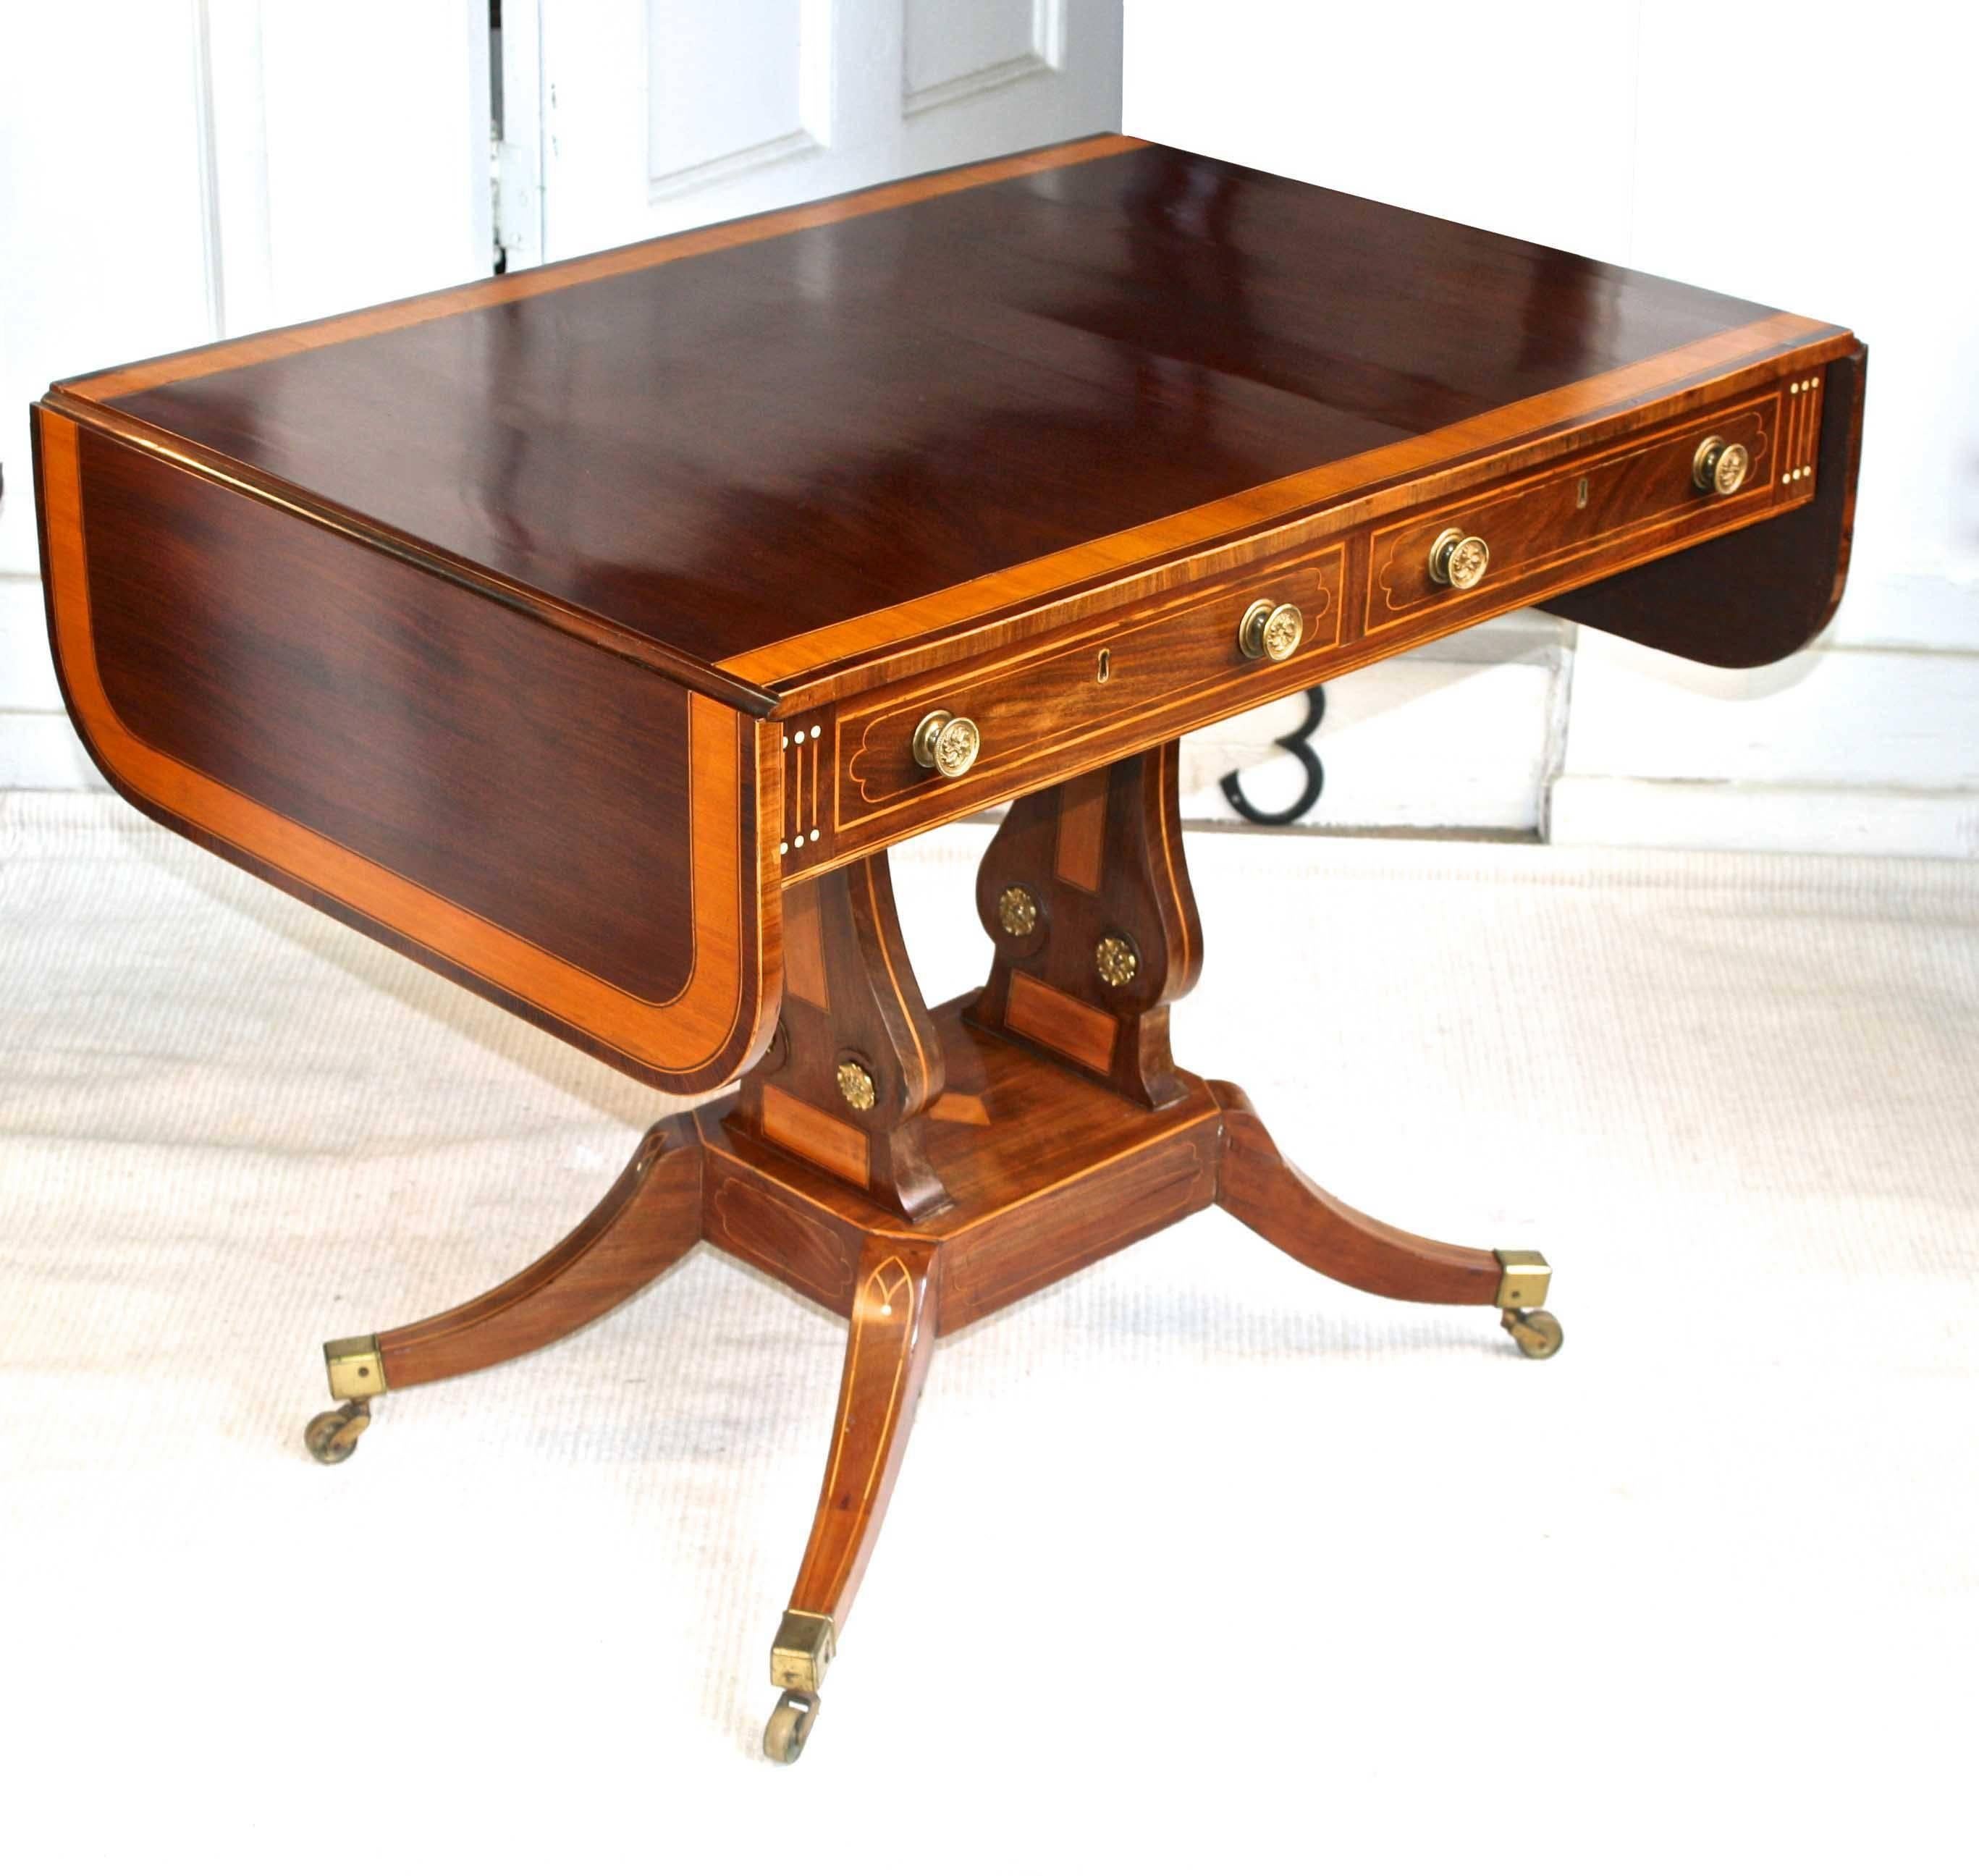 A satinwood and ebony inlaid, banded and veneered mahogany sabre-leg sofa-back or writing table just 25